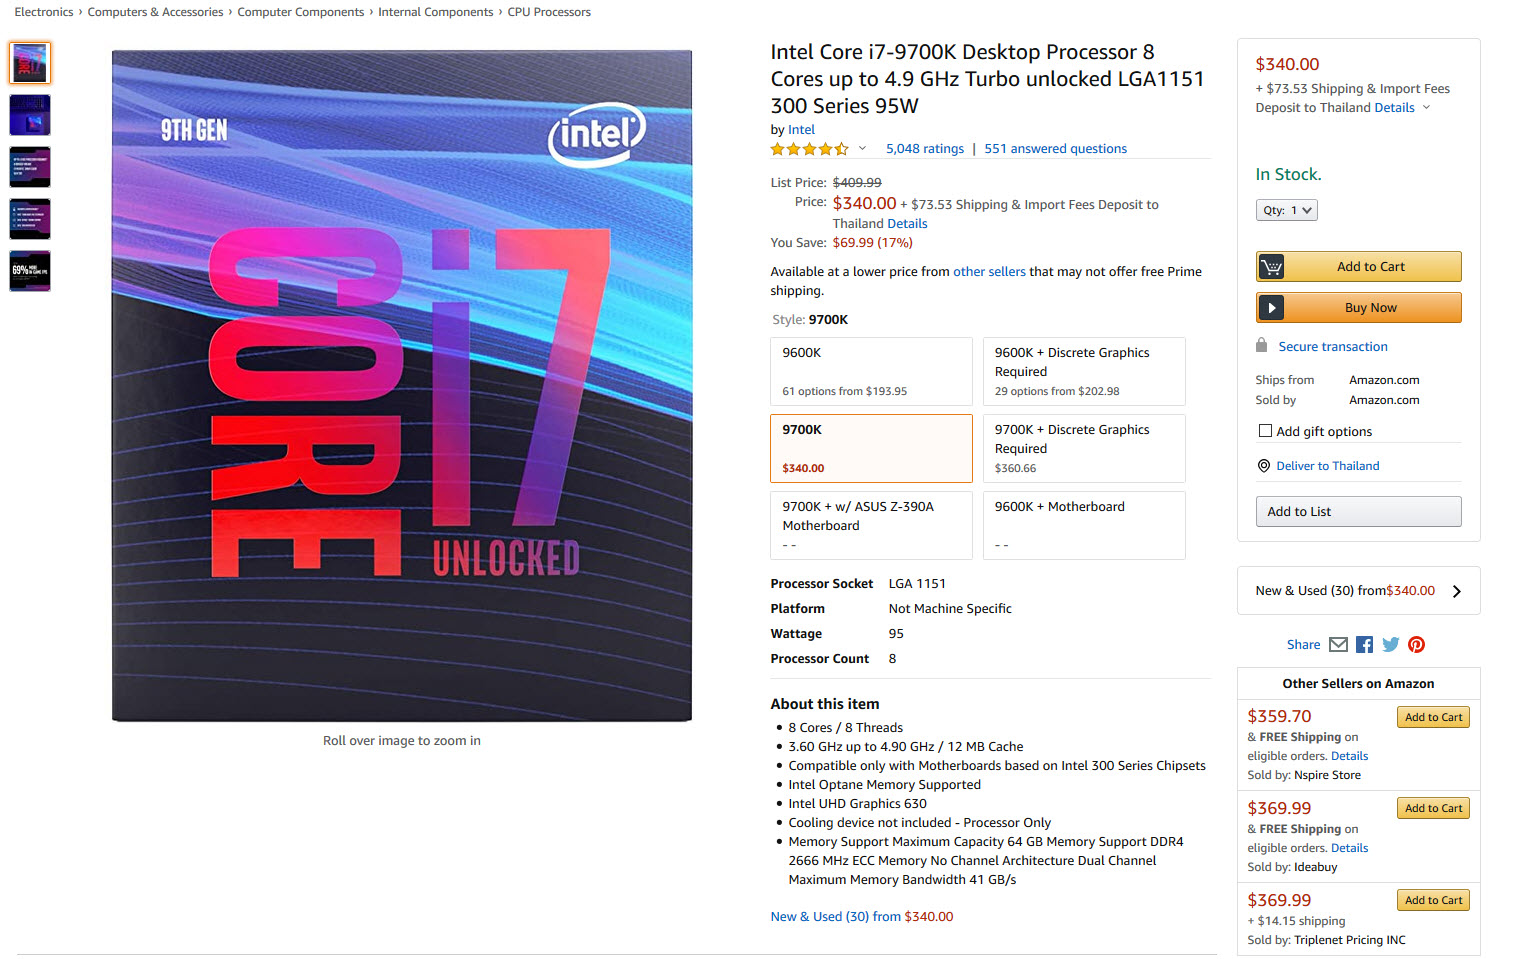 2020 08 12 11 33 09 ซีพียู Intel 9th Gen ลดราคาลง 25% ในเว็บไซต์ออนไลน์ต่างประเทศ